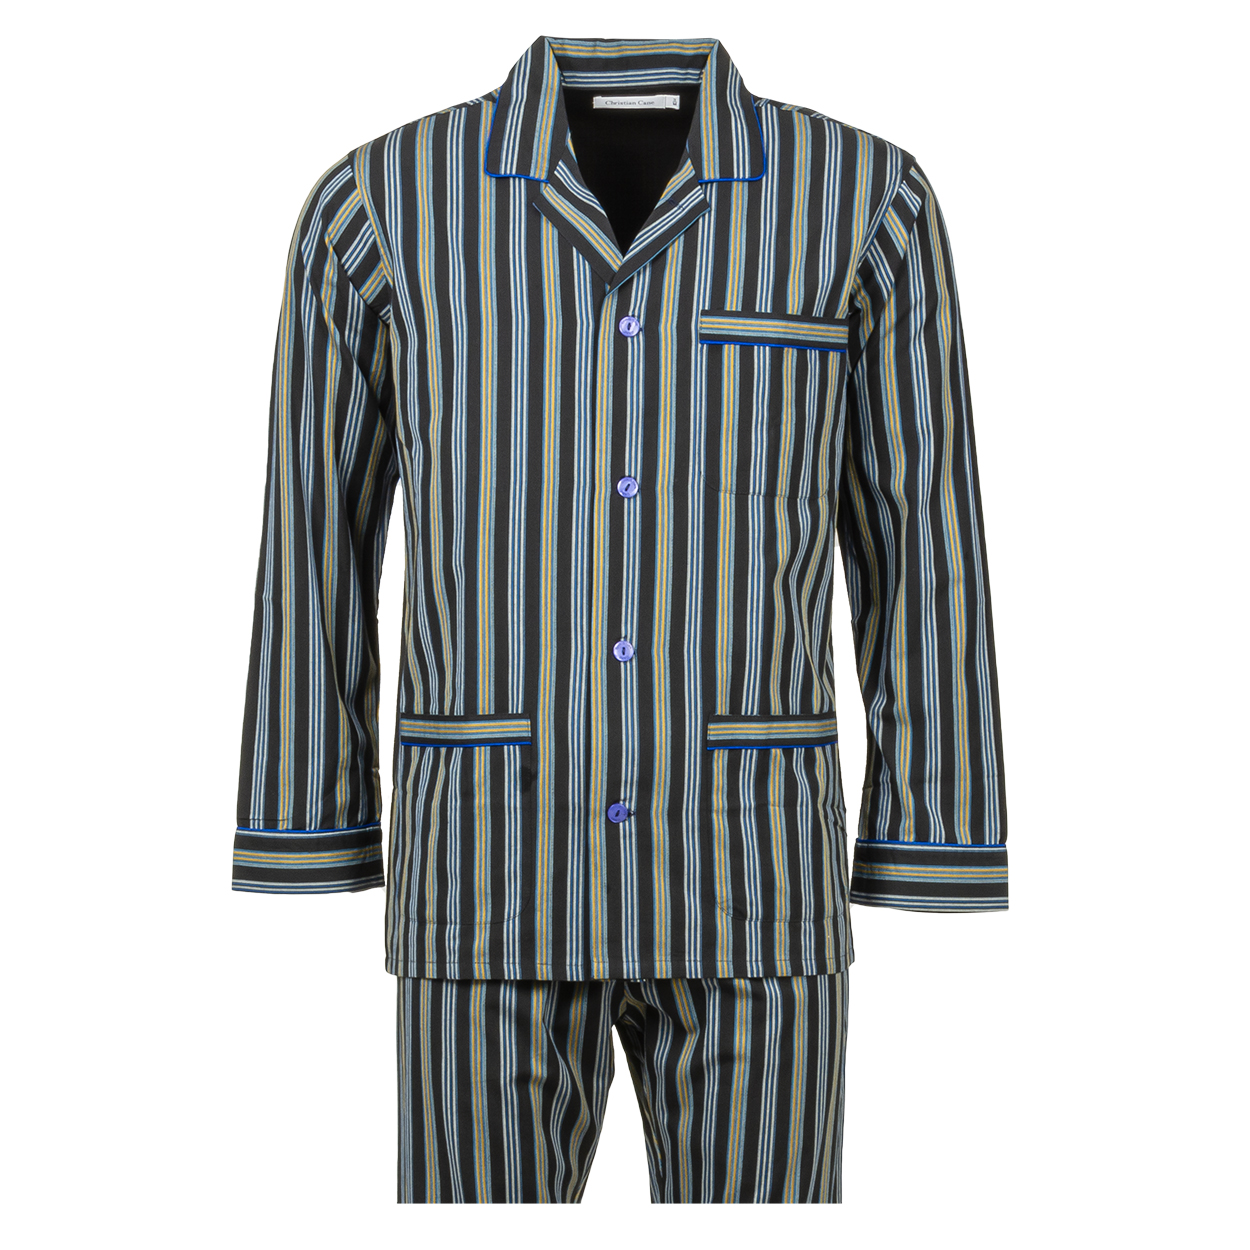 Pyjama long col chemise Christian Cane Barri en coton noir à rayures verticales bleu marine, blanche